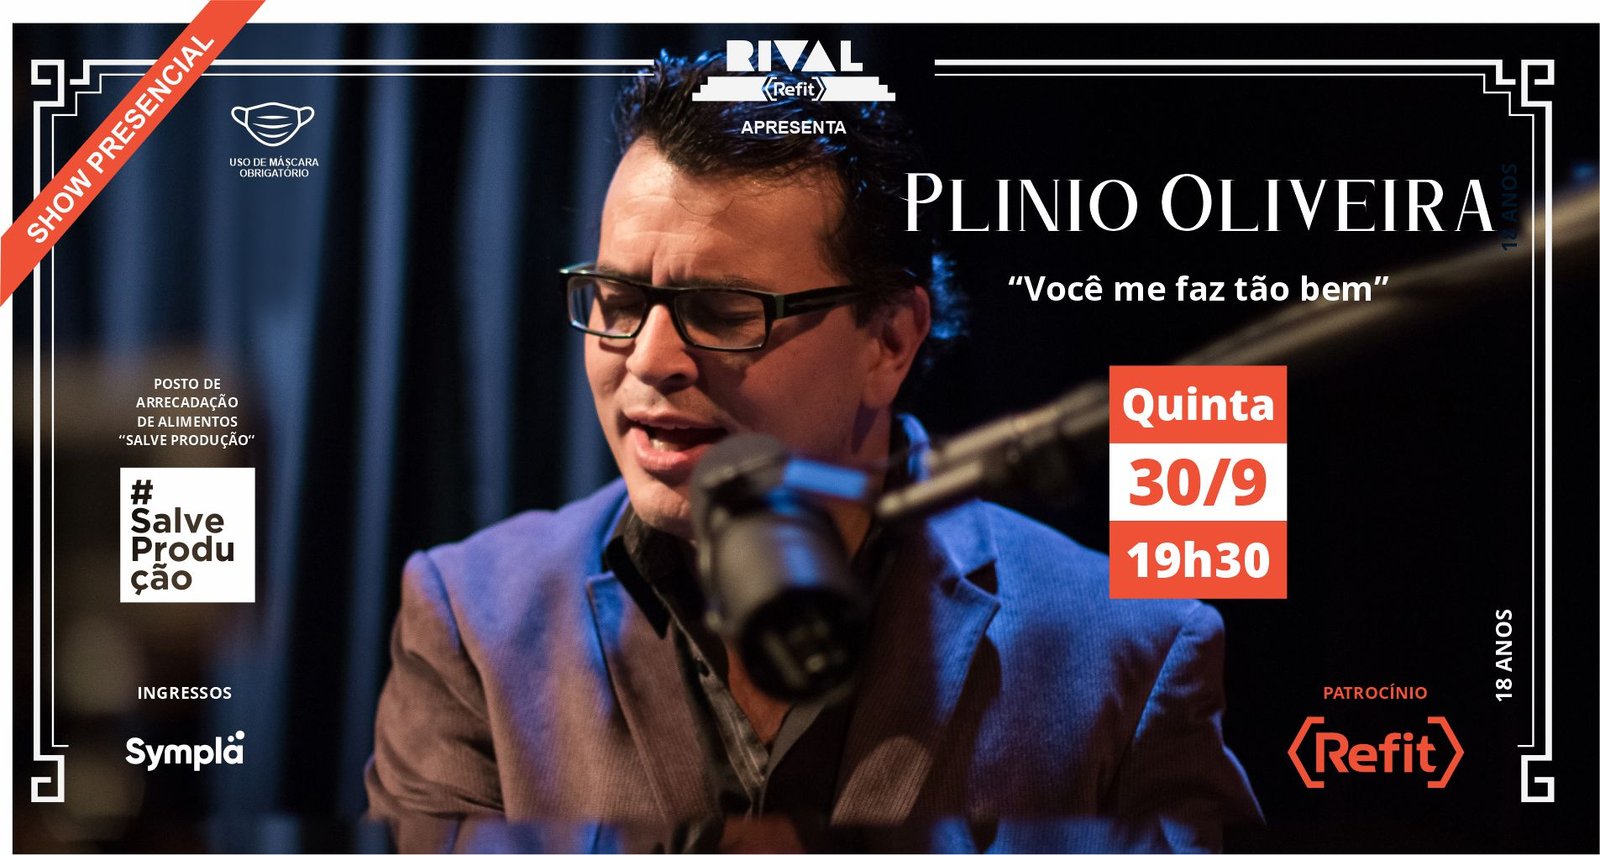 Plinio Oliveira